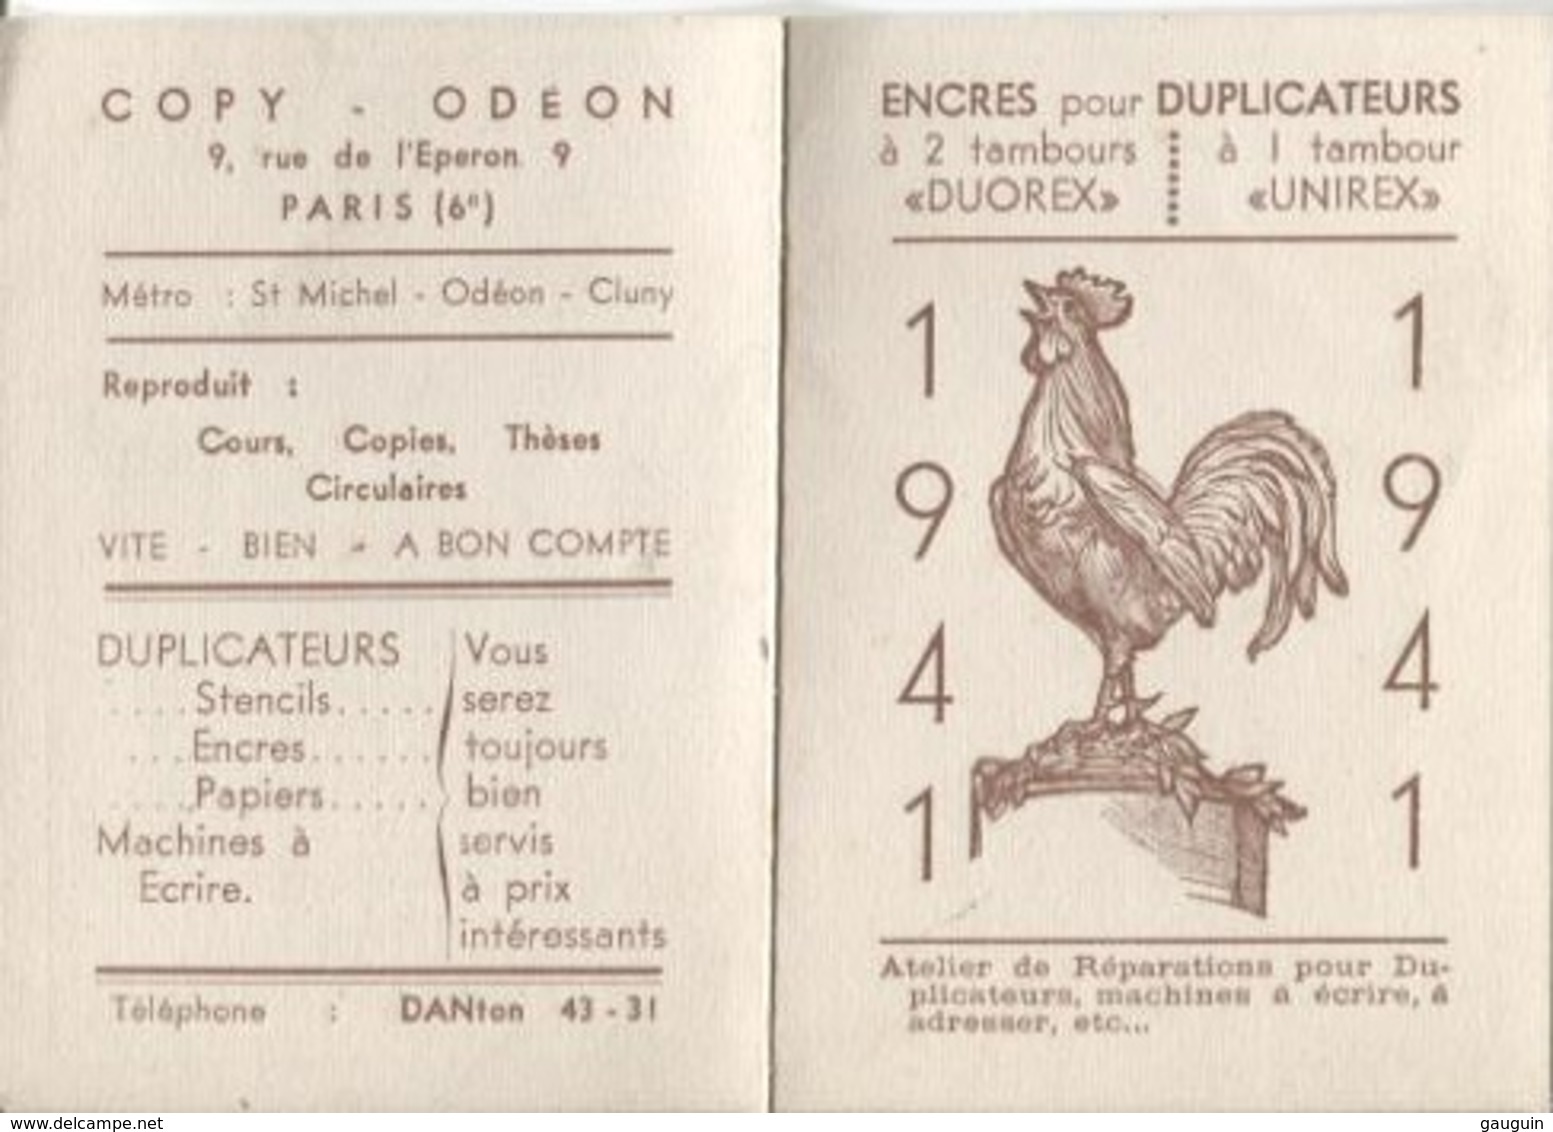 CALENDRIER De POCHE - ANNEE 1941 - Publicité ENCRES "DUOREX" - COPY ODEON / PARIS - Small : 1941-60